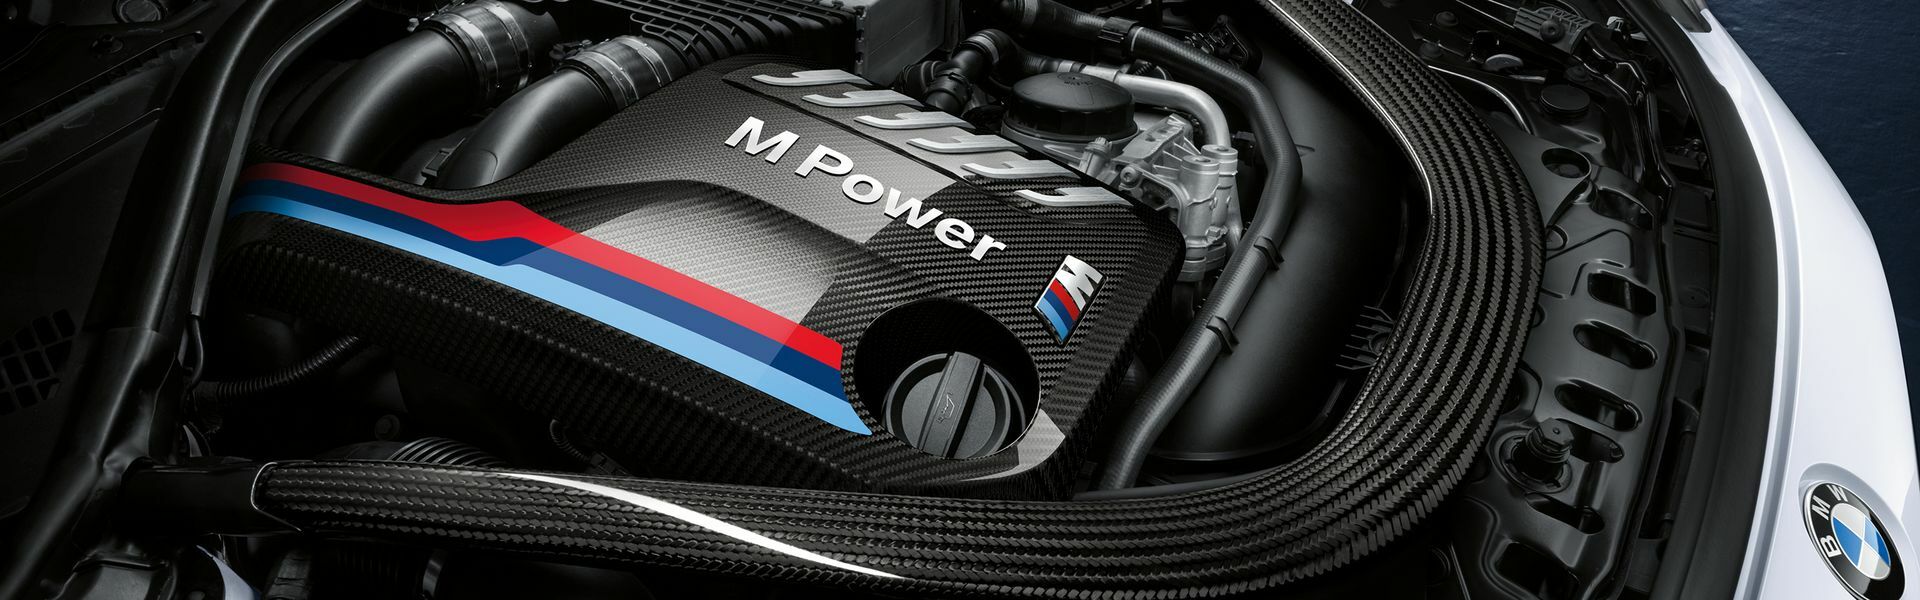 Zvýšení výkonu/ Softwarové úpravy/ Drobné performance díly pro automobil Porsche Boxster S 981